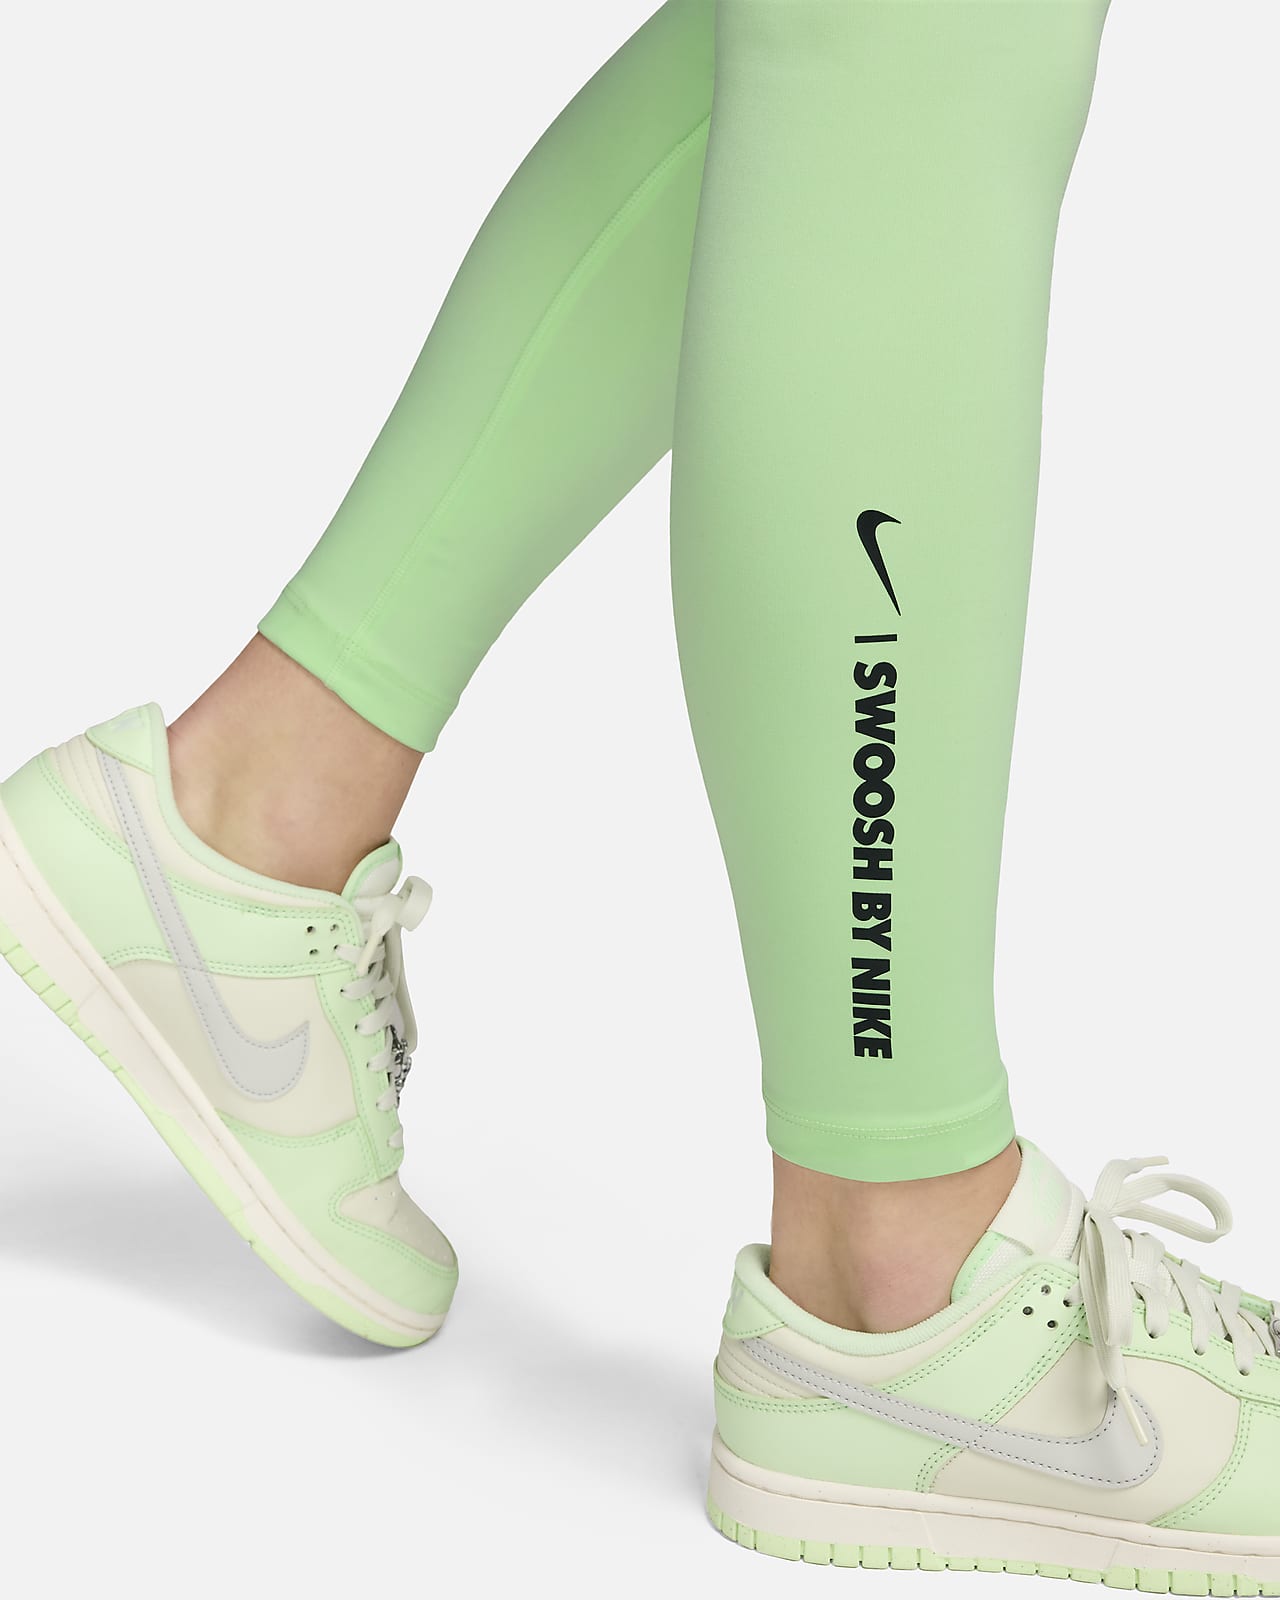 Nike One lange legging met hoge taille voor dames. Nike NL